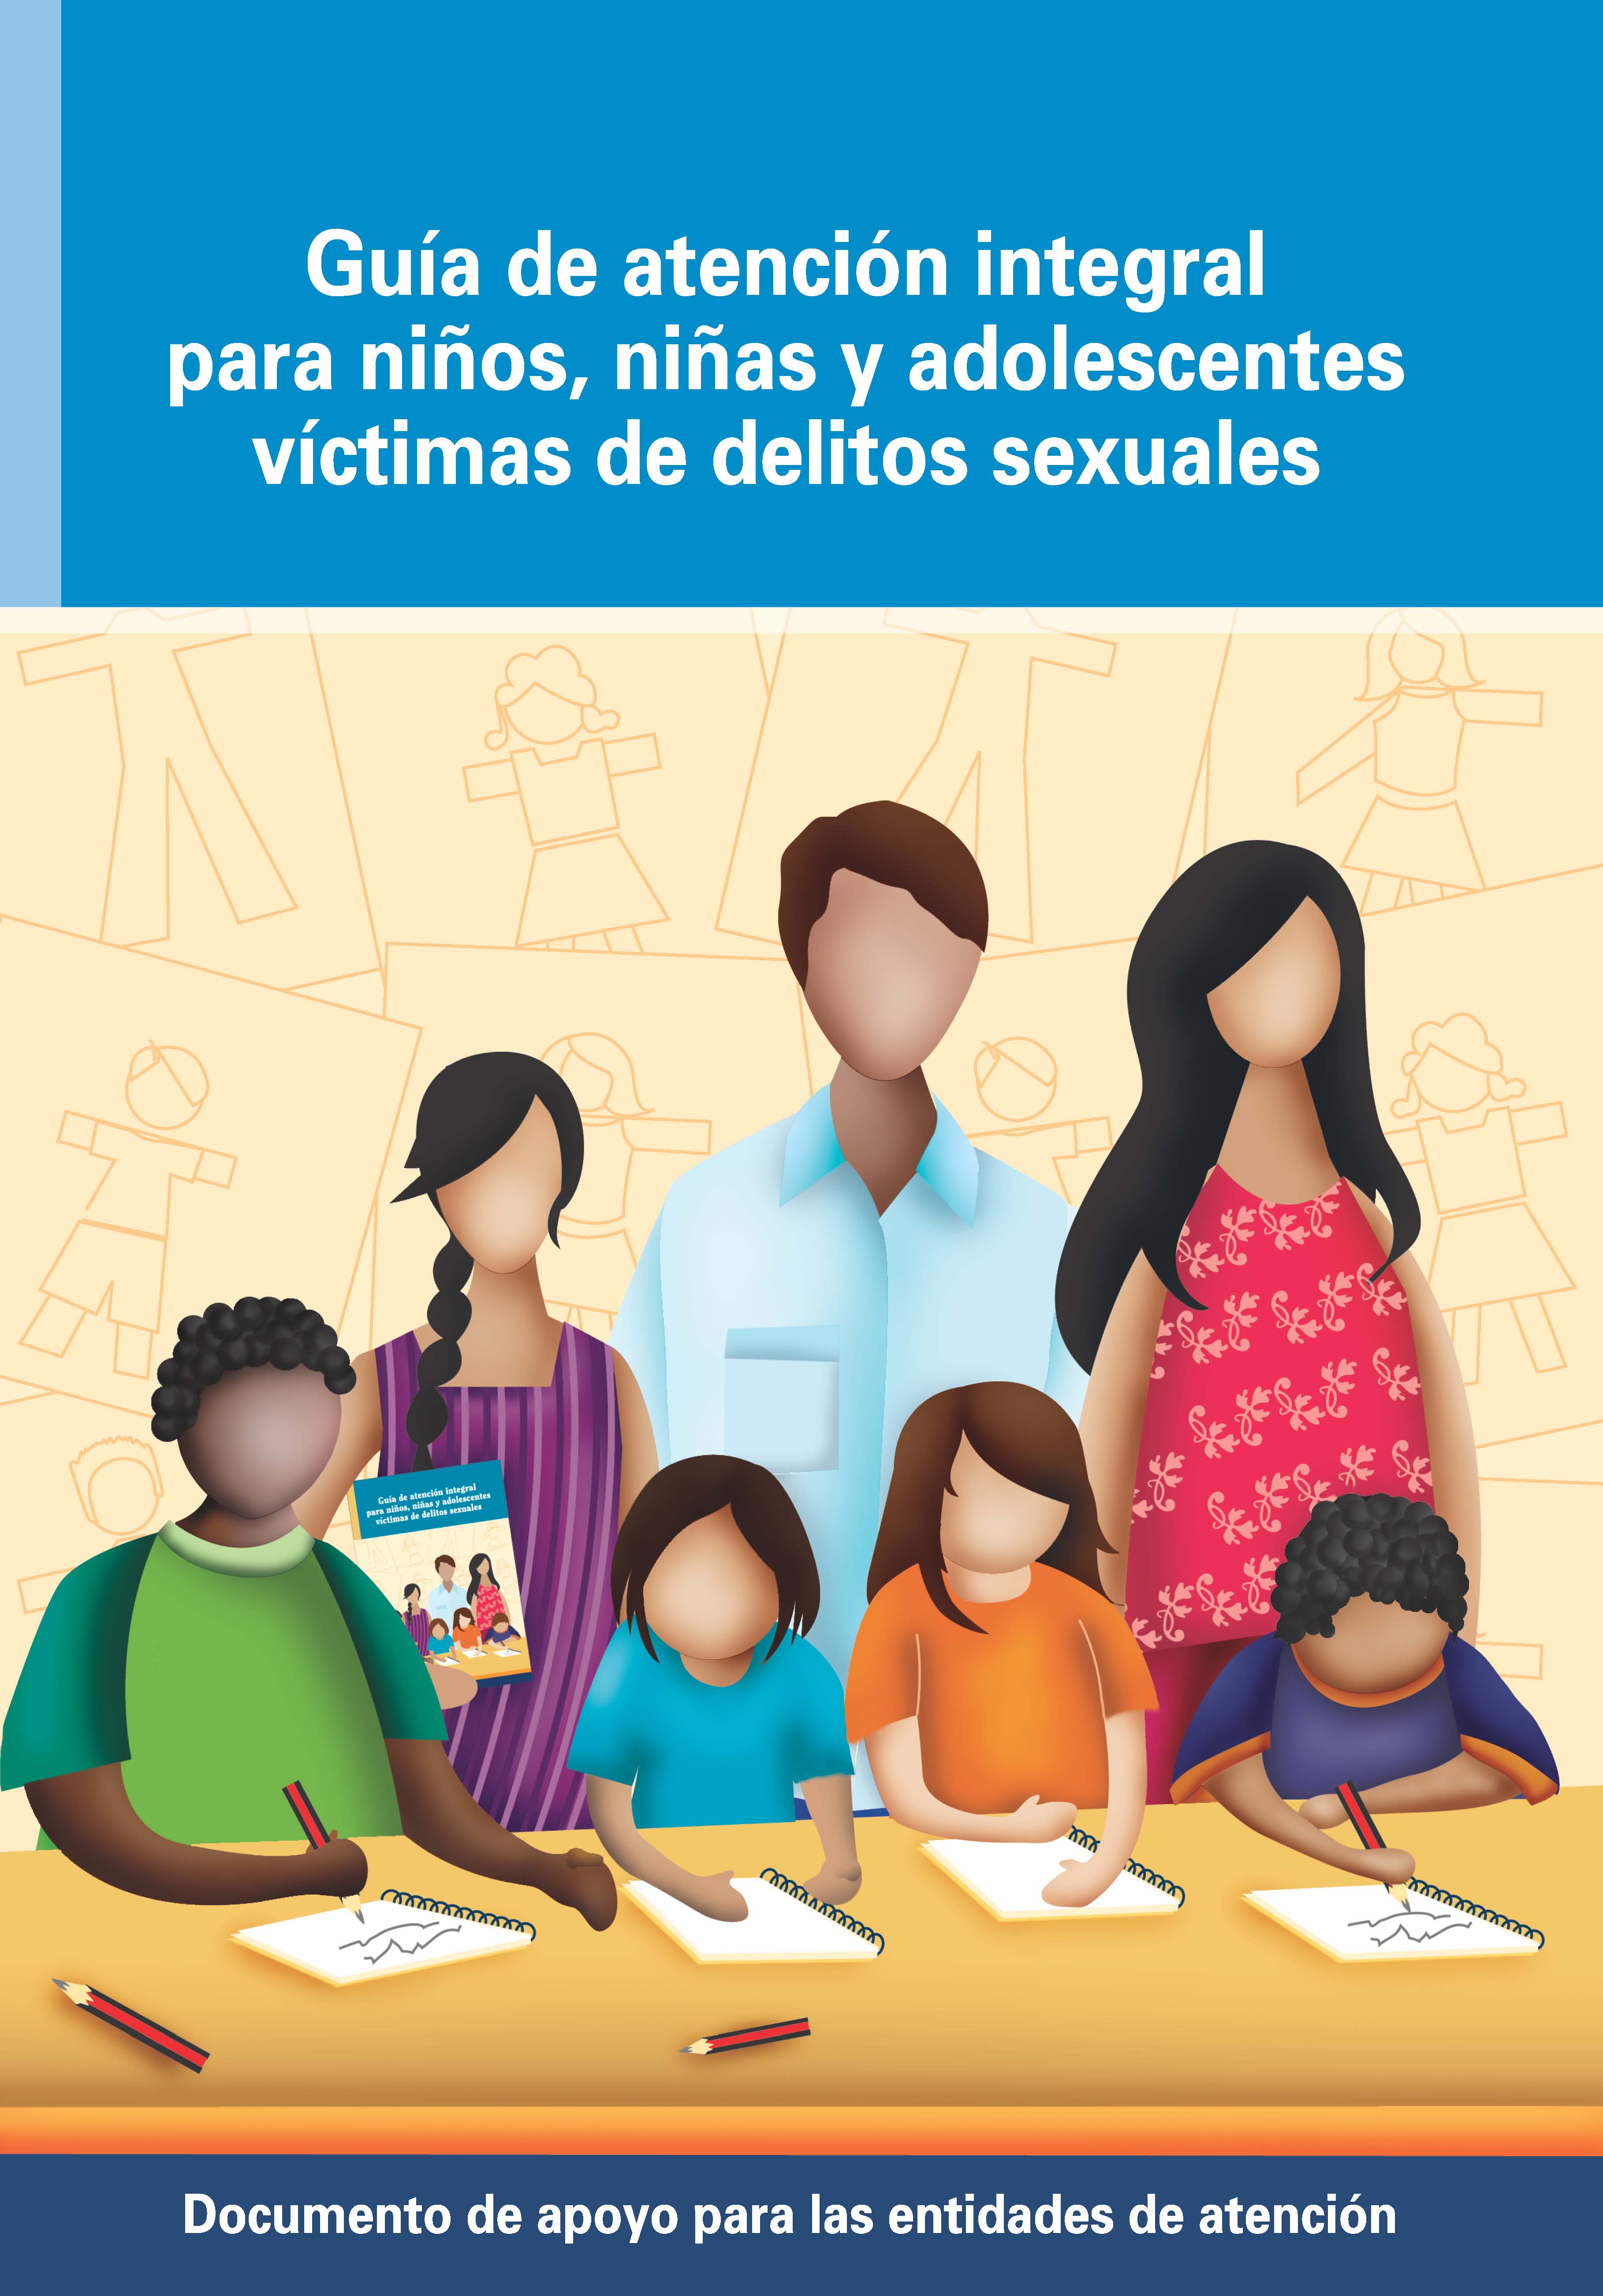 Guía de atención integral para niños, niñas y adolescentes víctimas de delitos sexuales: documento de apoyo para las entidades de atención